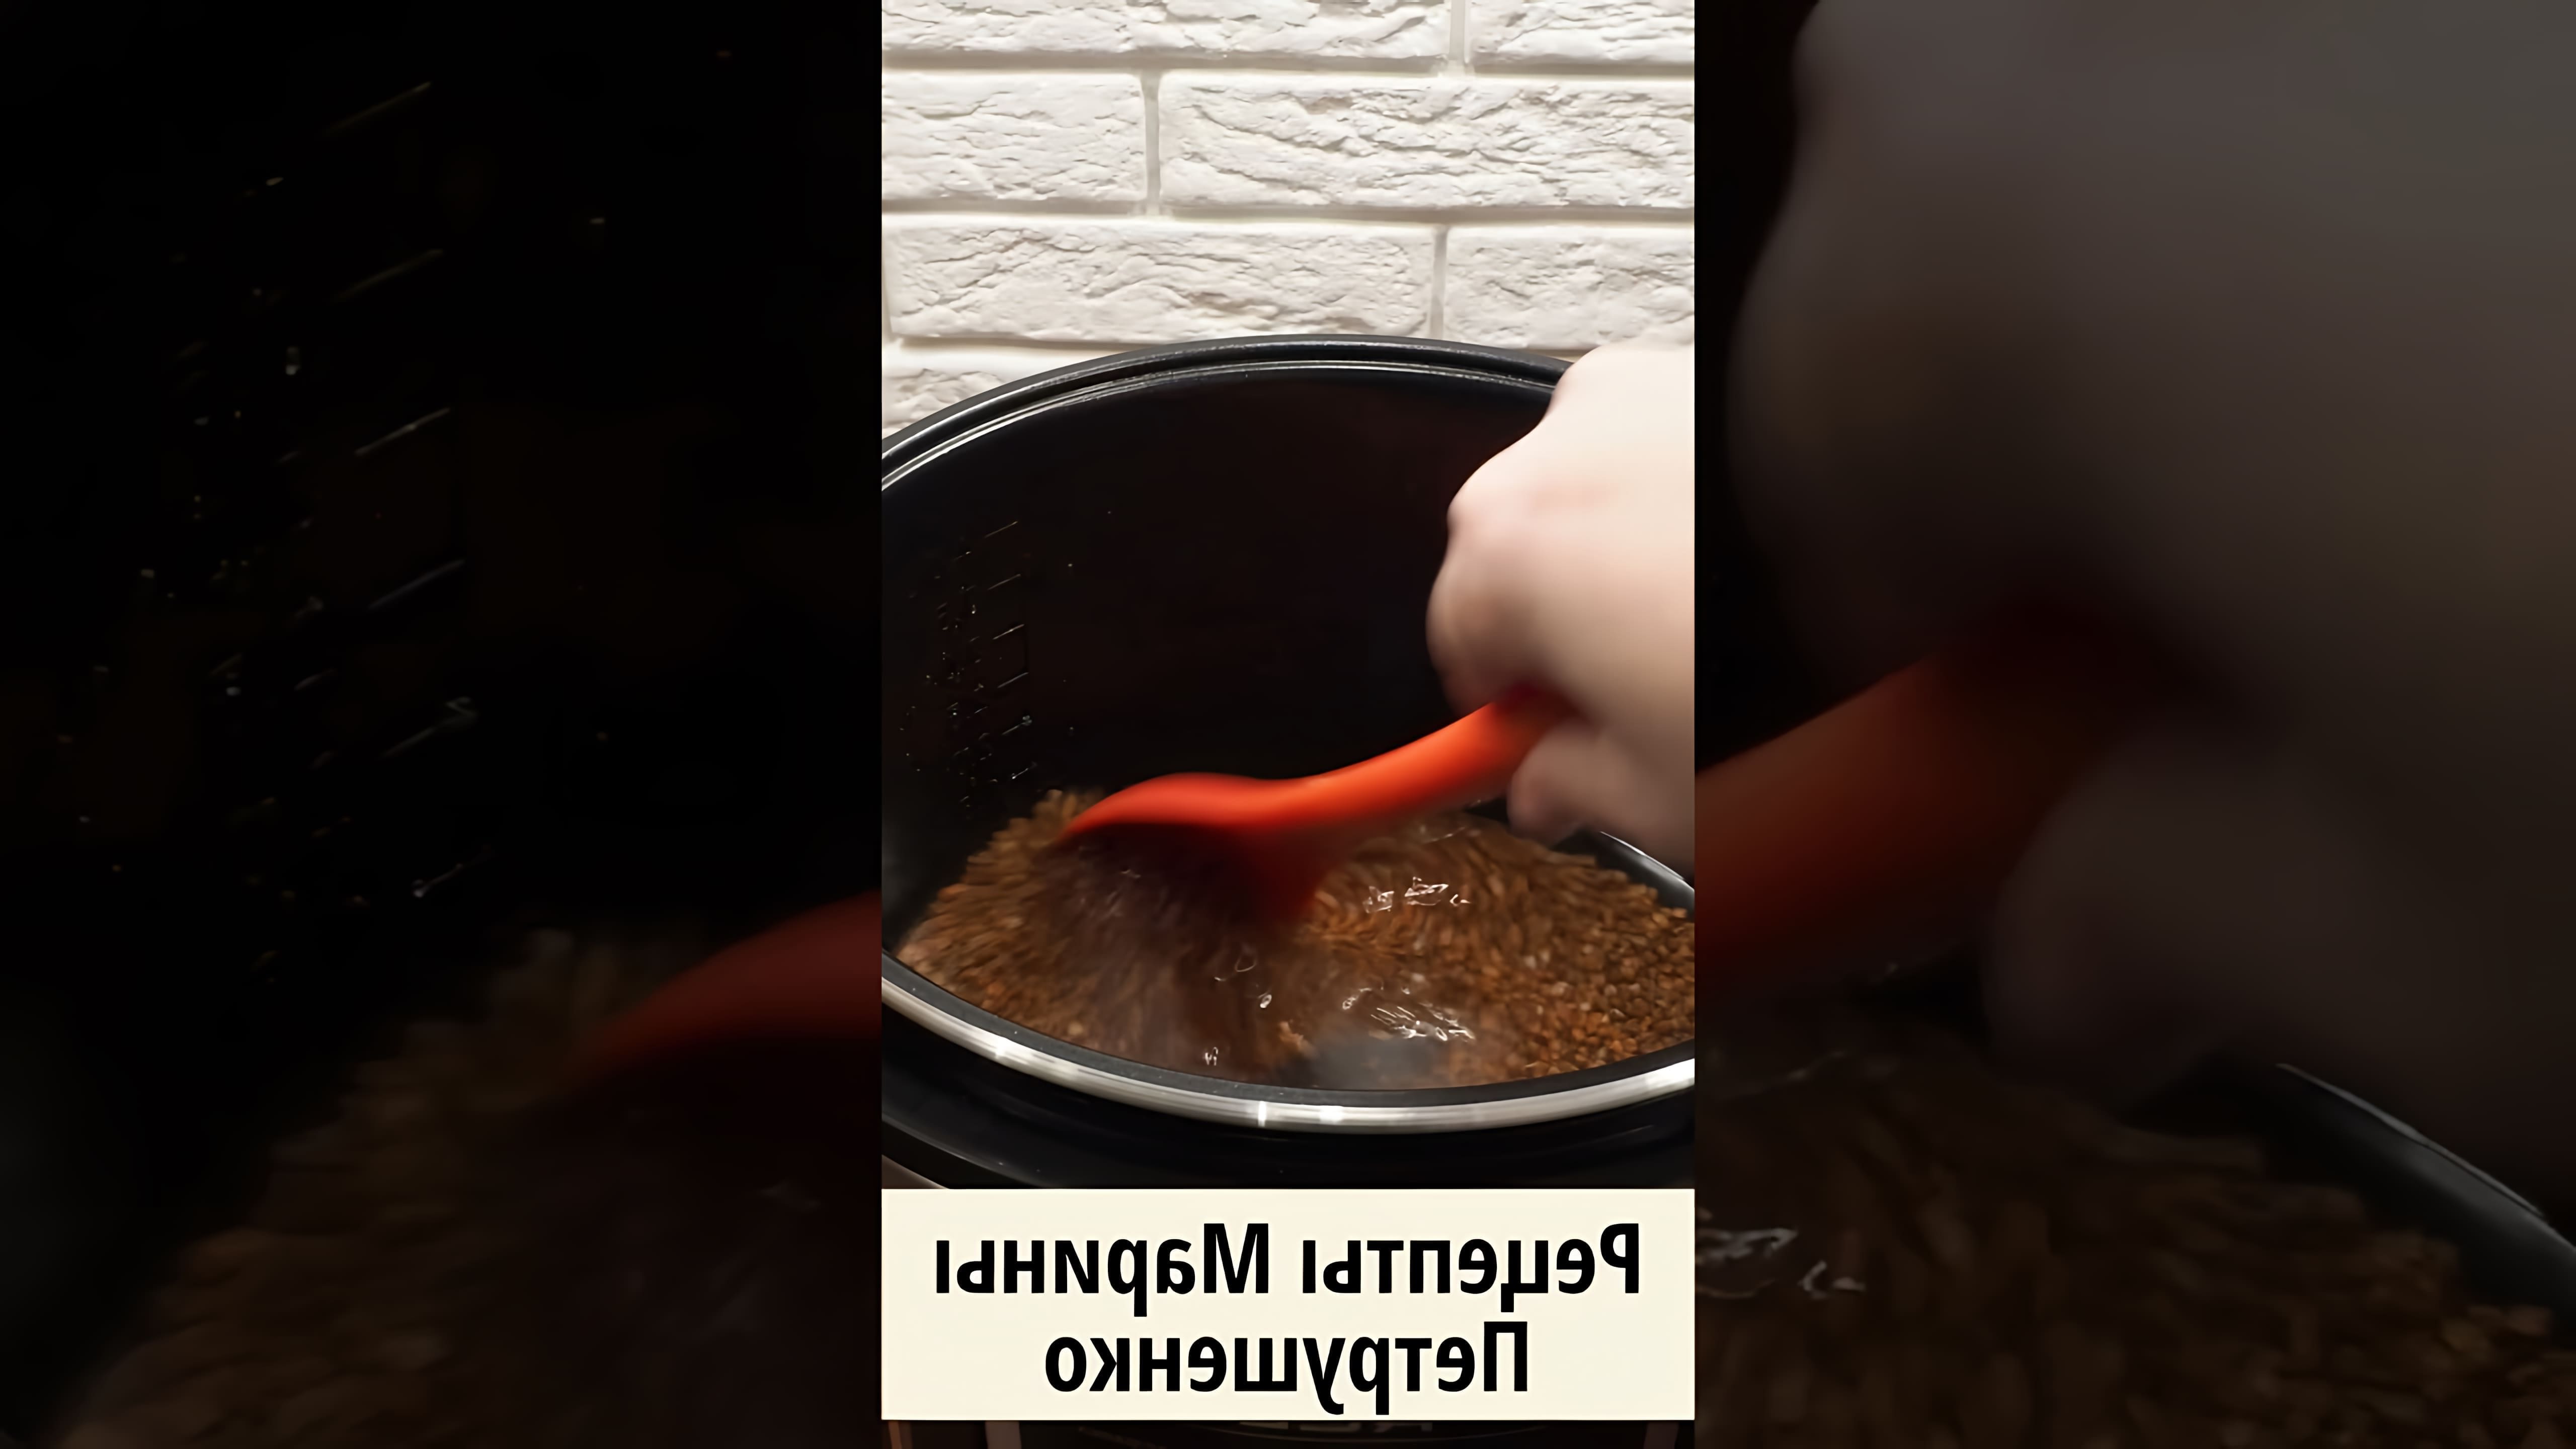 В этом видео демонстрируется рецепт приготовления гречки в мультиварке